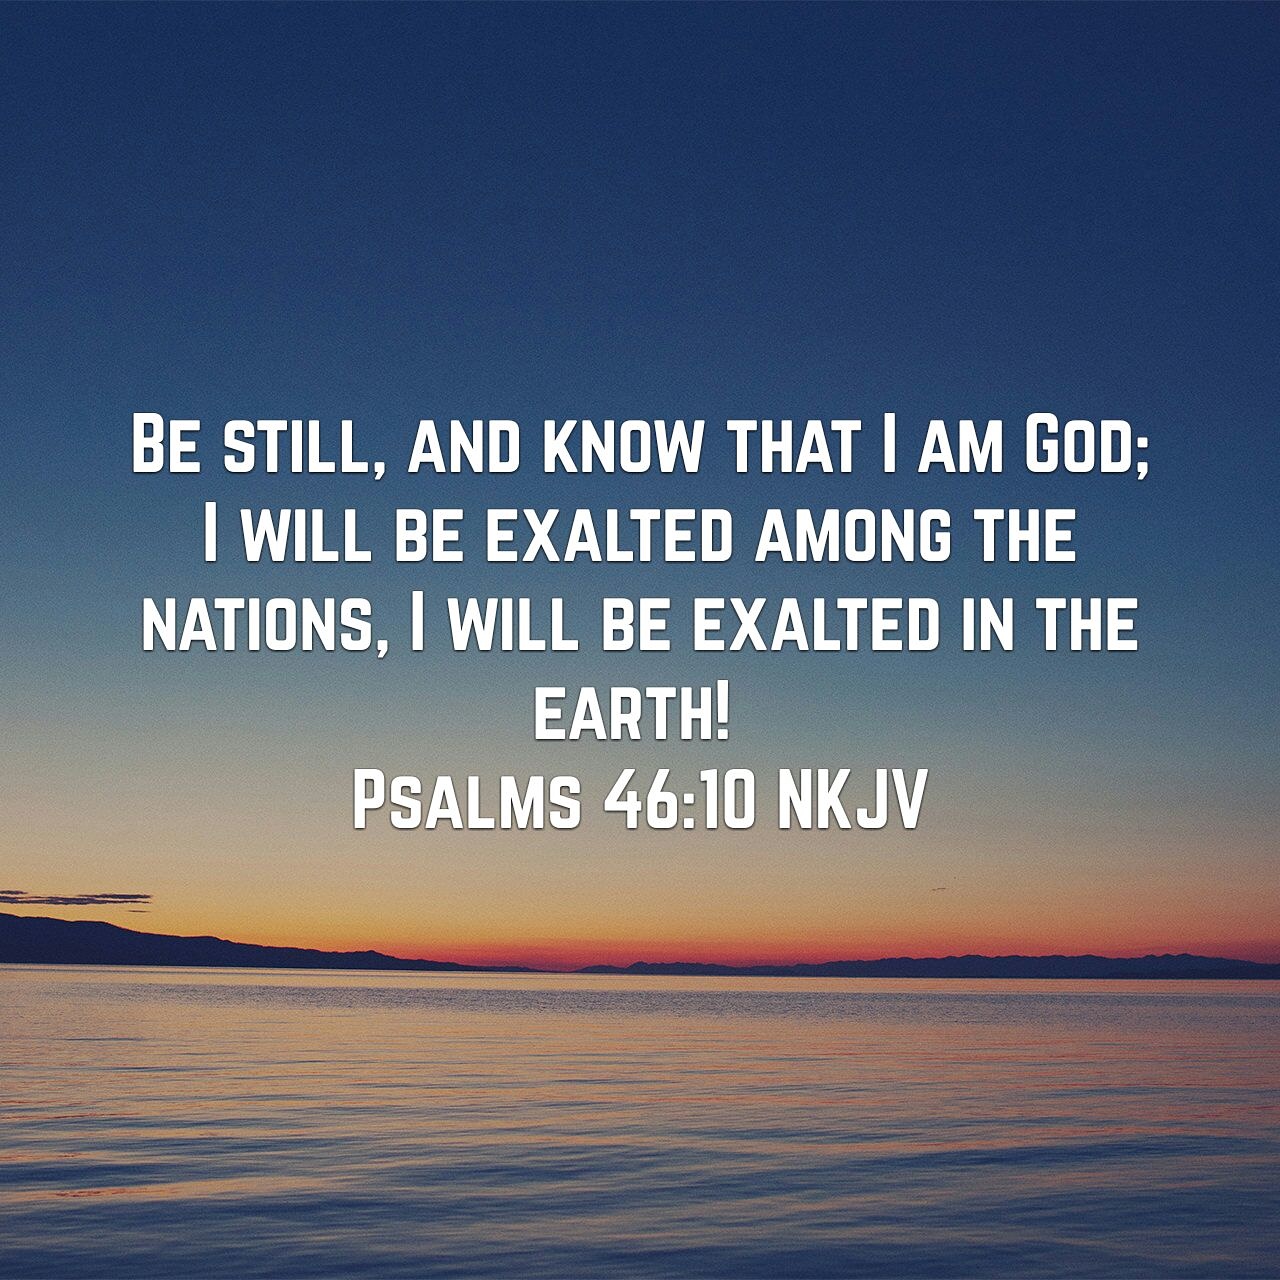 Psalms, Be Still, God